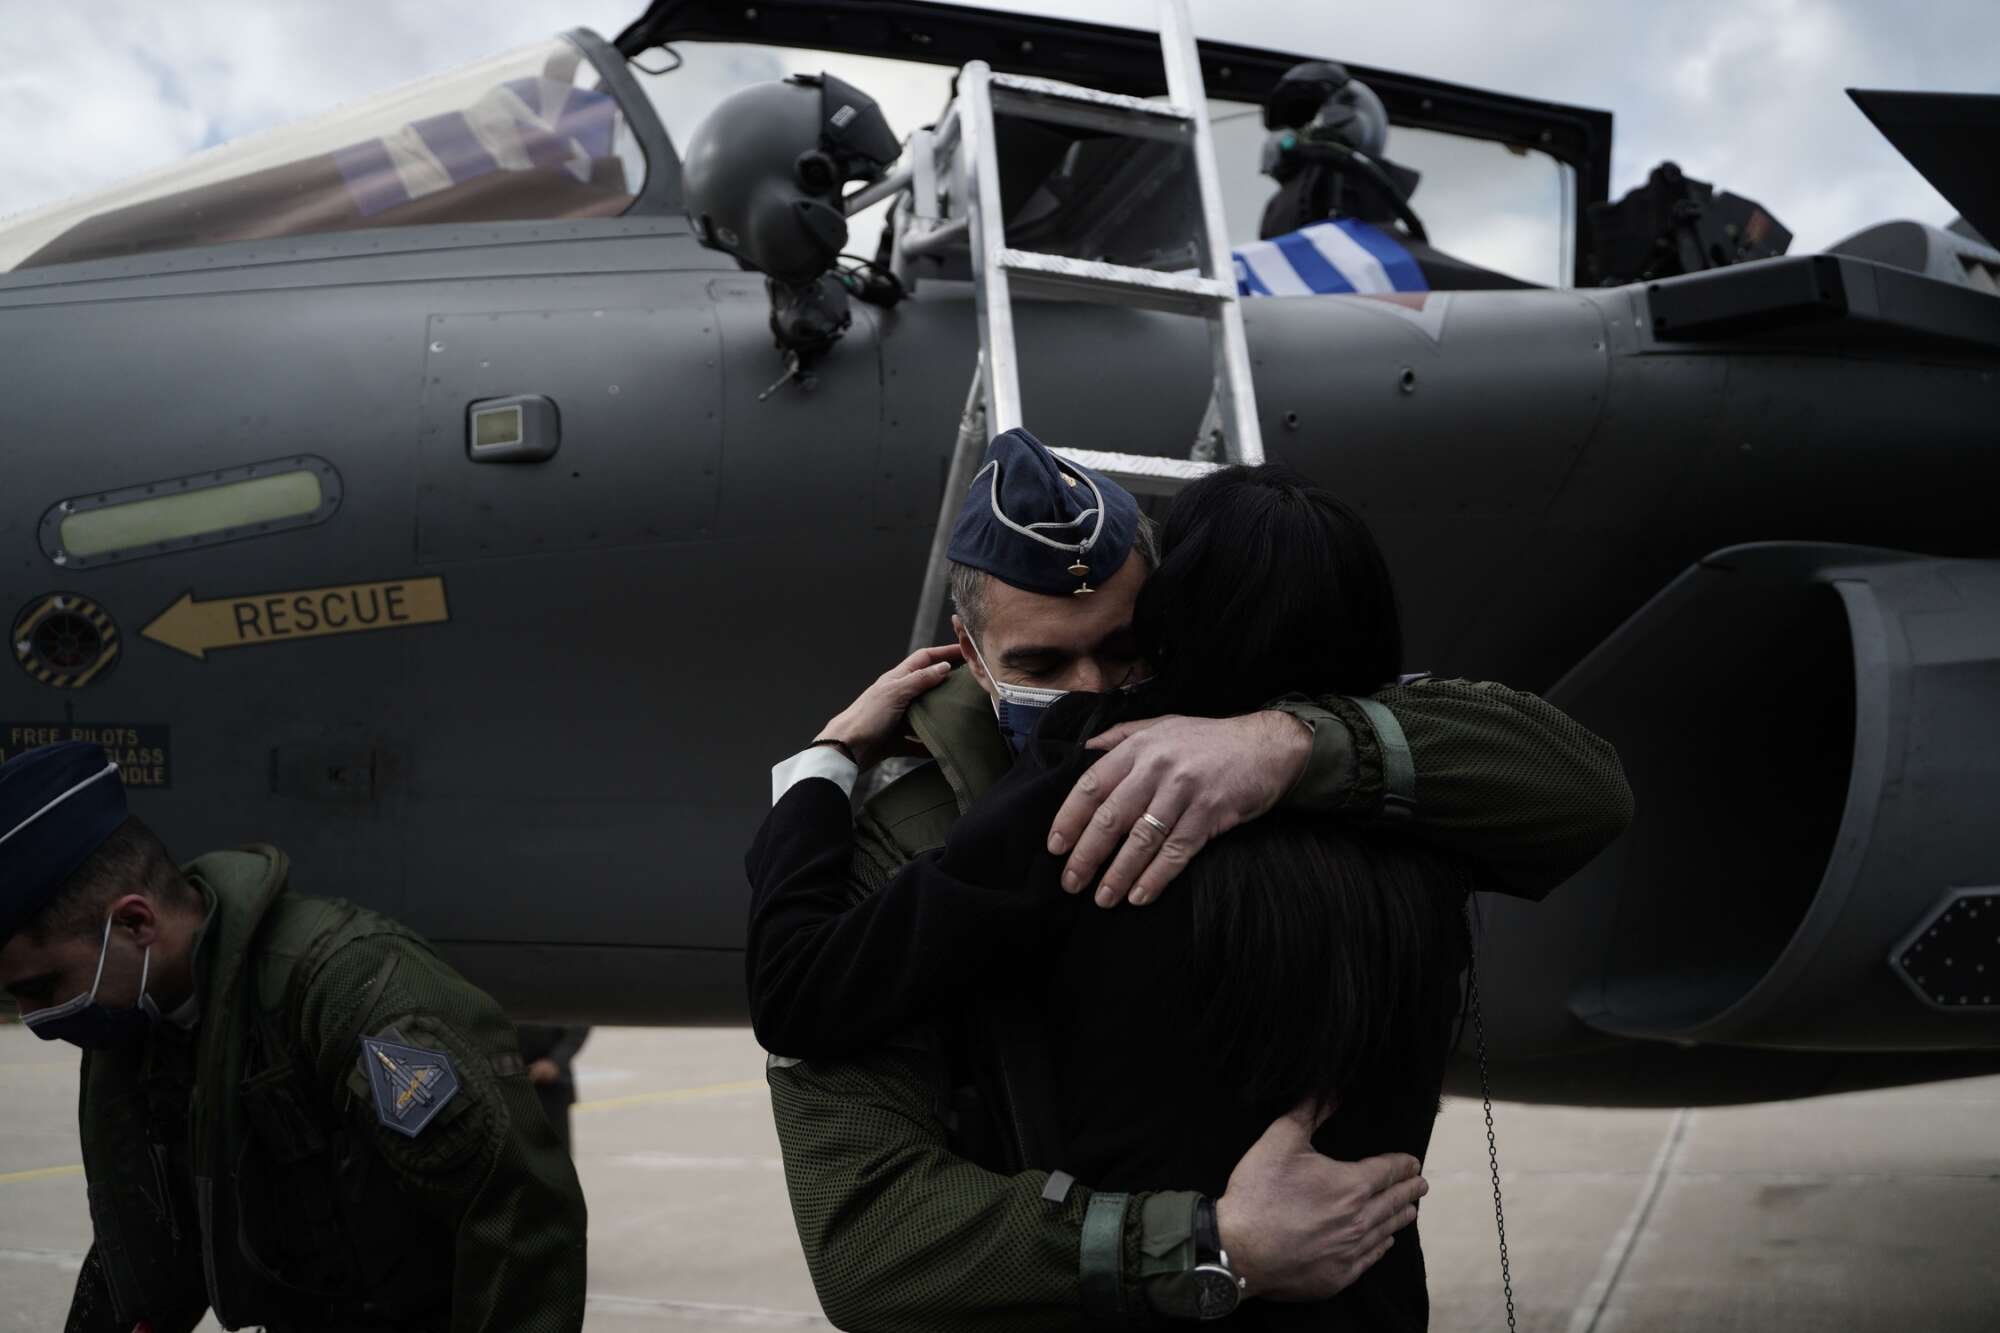 Επιστροφή στην πατρίδα και την οικογένεια. Μια ζεστή αγκαλιά περίμενε τον ιπτάμενο της Πολεμικής Αεροπορίας στην (παγωμένη...) Τανάγρα